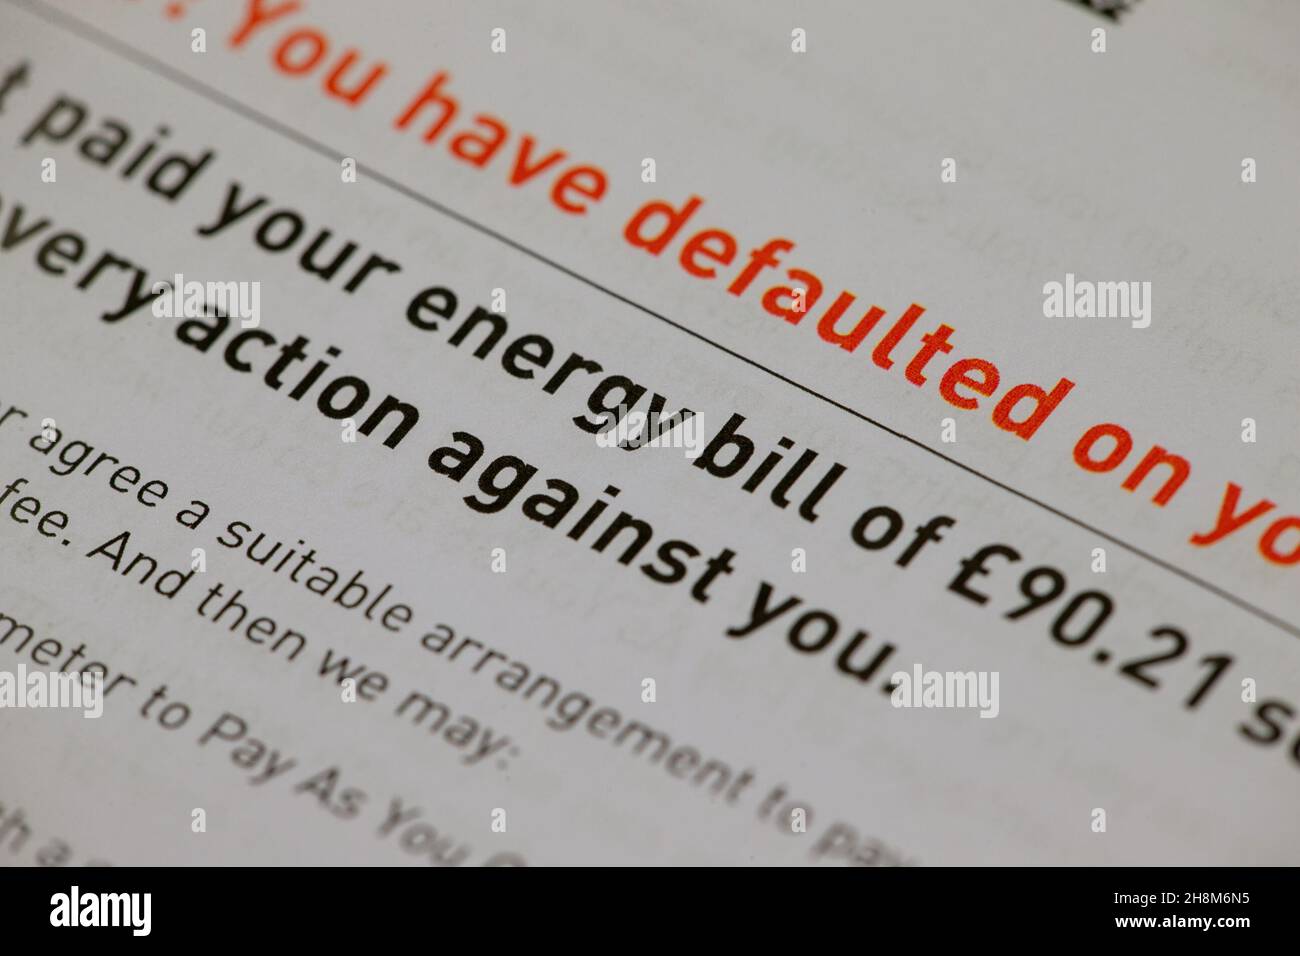 Une facture énergétique faisant valoir que le client n'a pas payé.Date de la photo: Mercredi 1er décembre 2021. Banque D'Images